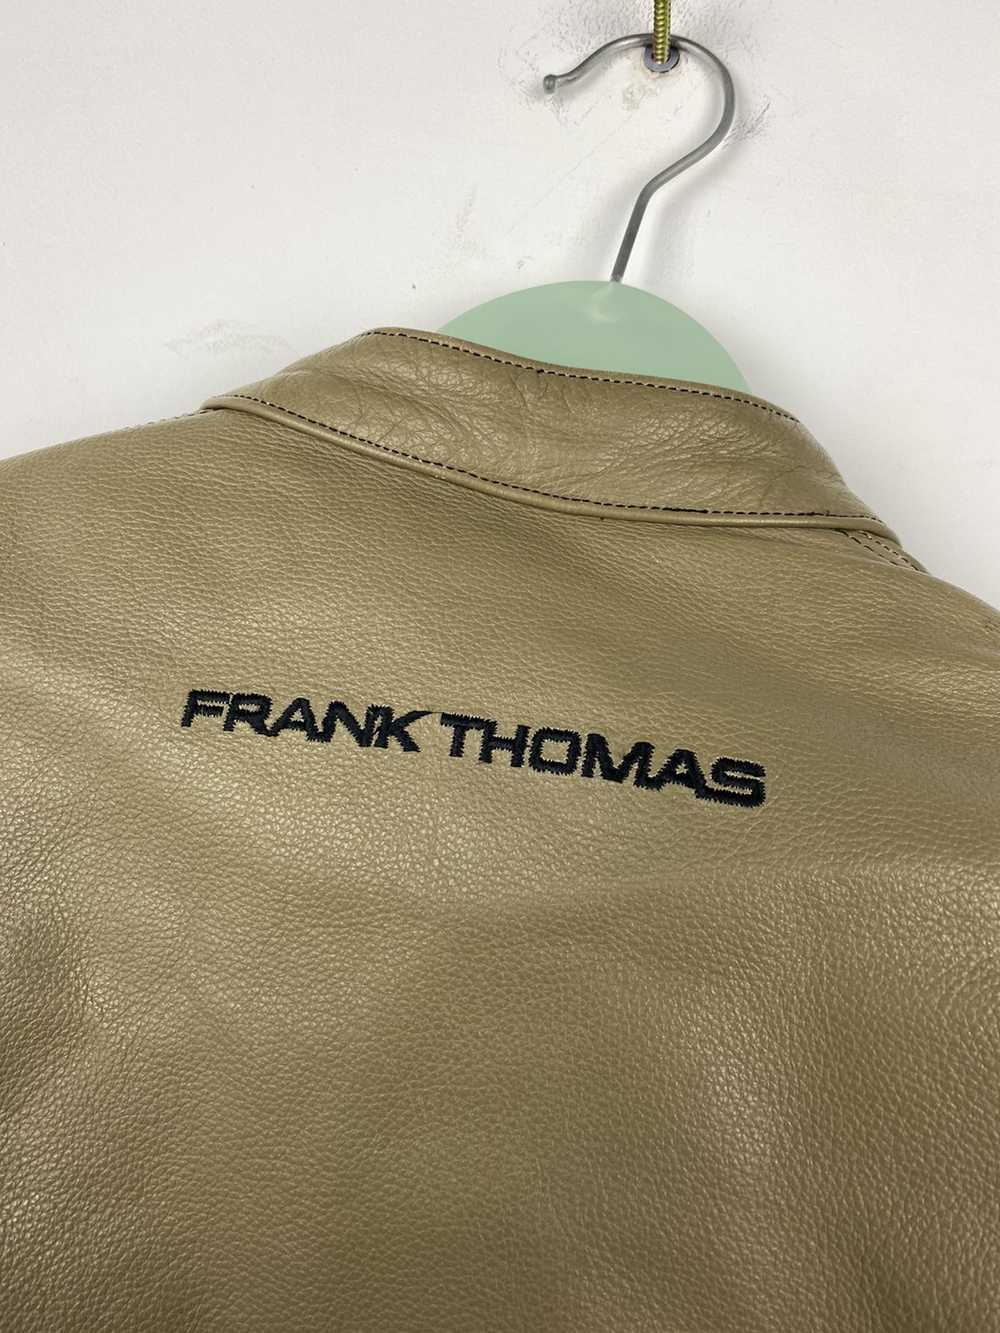 Leather Jacket × MOTO × Racing Frank Thomas Leath… - image 7